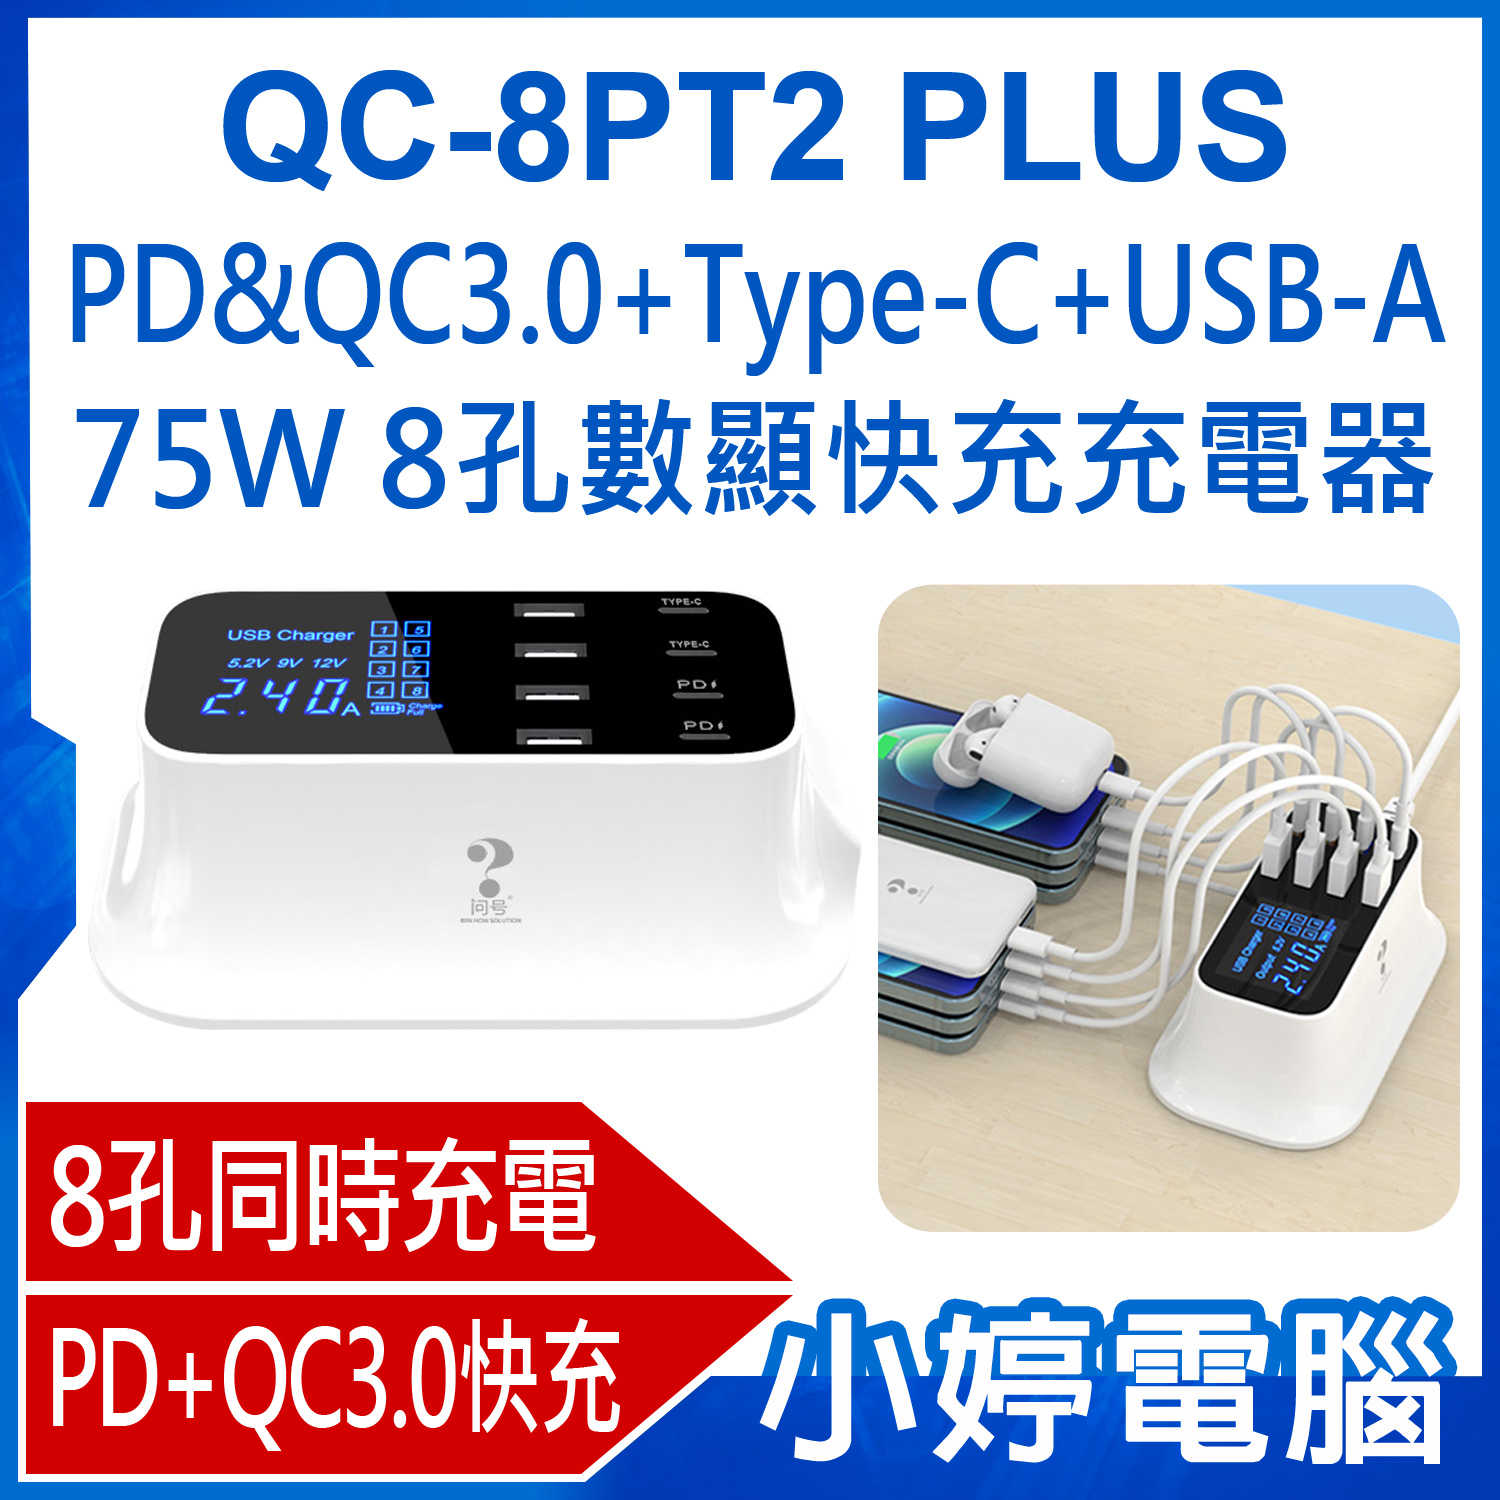 【小婷電腦】QC-8PT2 PLUS PD&QC3.0+Type-C+USB-A 75W 8孔數顯快充充電